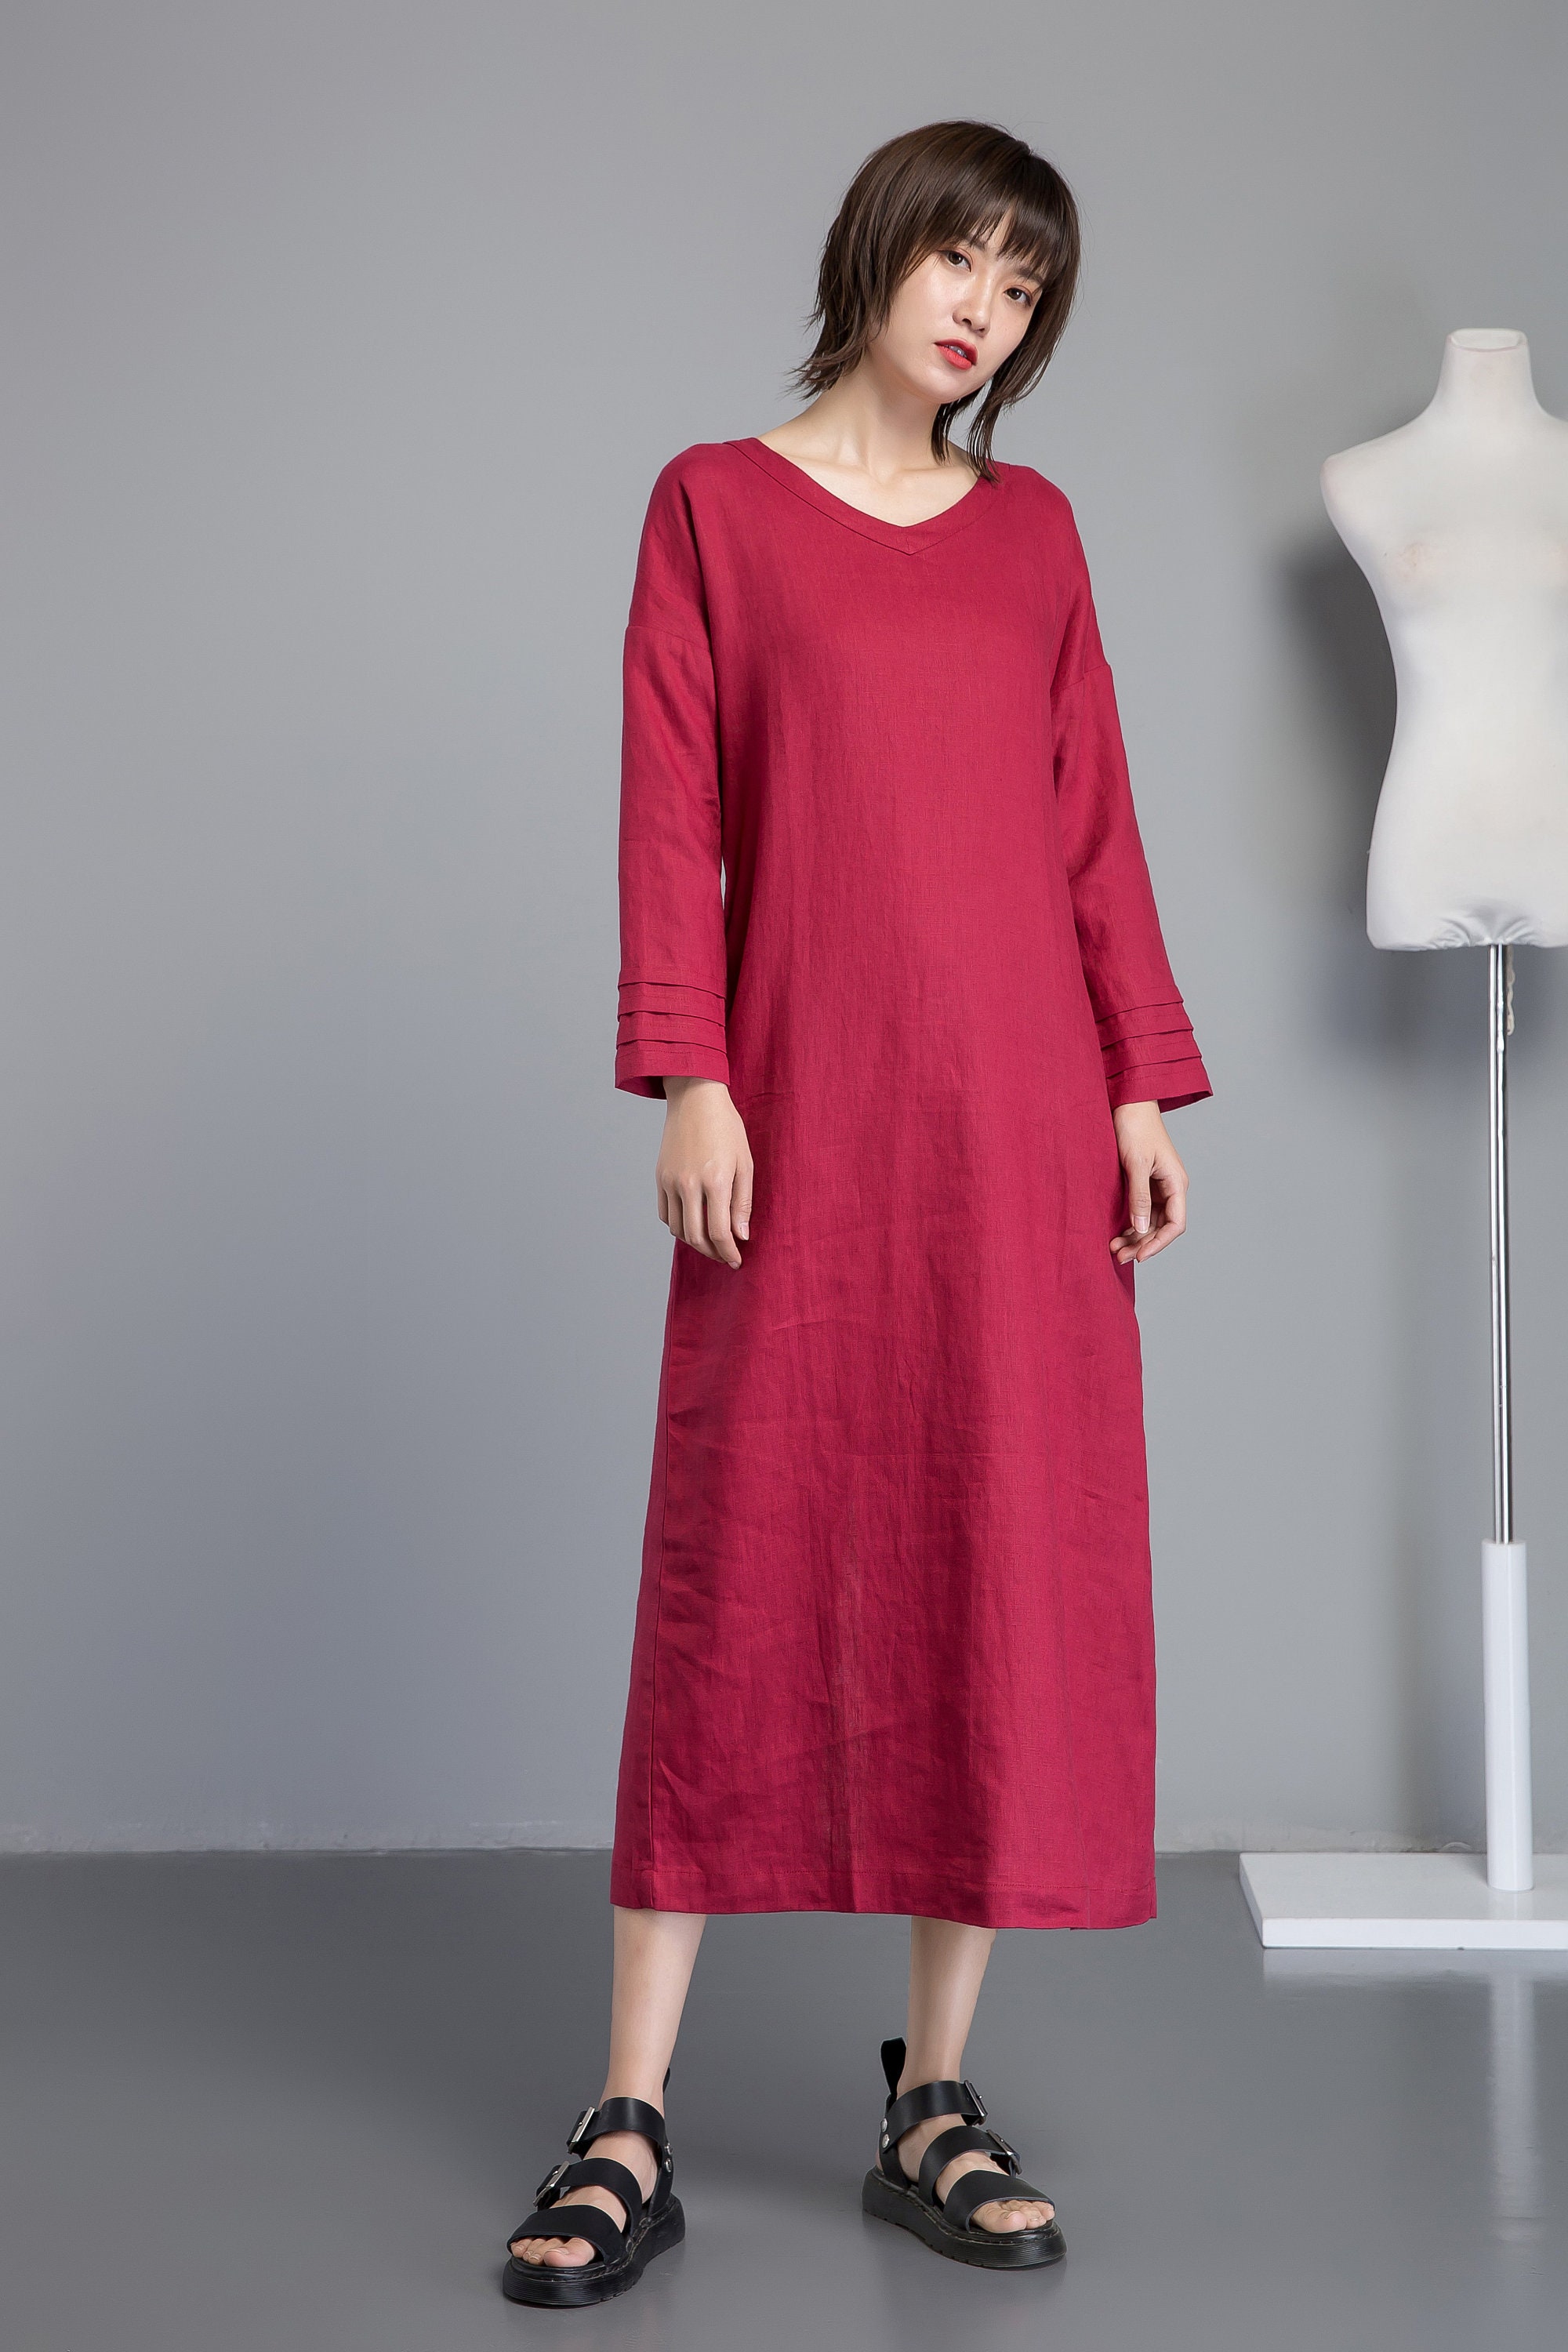 Linen Dress Maxi Dress Red Dress Women Linen Dress Pockets | Etsy